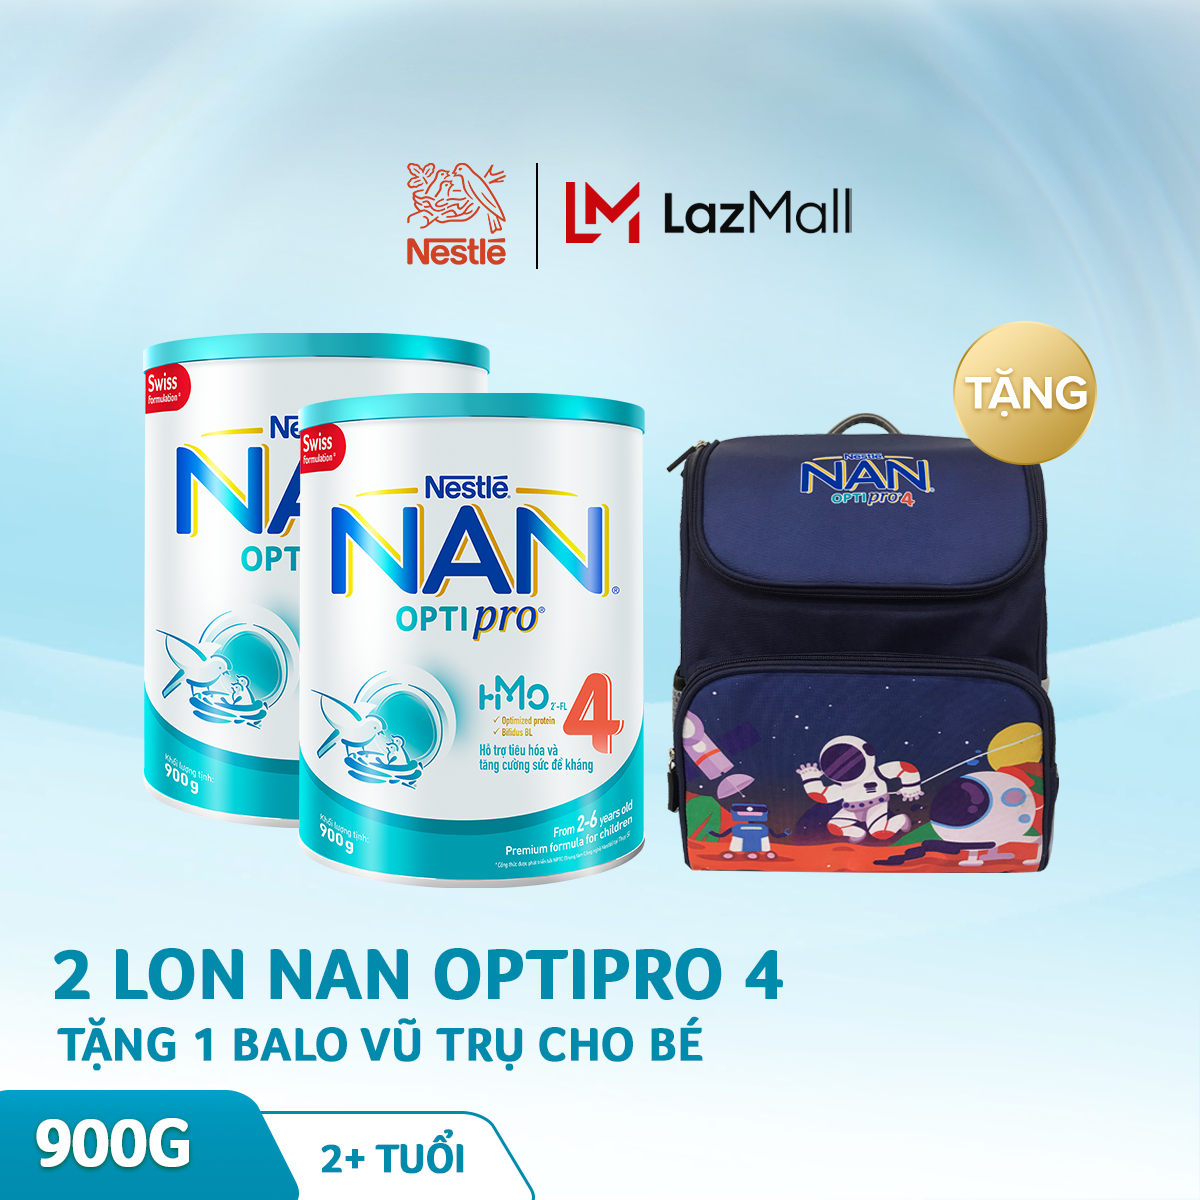 Bộ 2 lon sữa bột Nestle NAN Optipro 4 cho trẻ trên 2 tuổi 900g + Tặng 1 balo vũ trụ cho bé